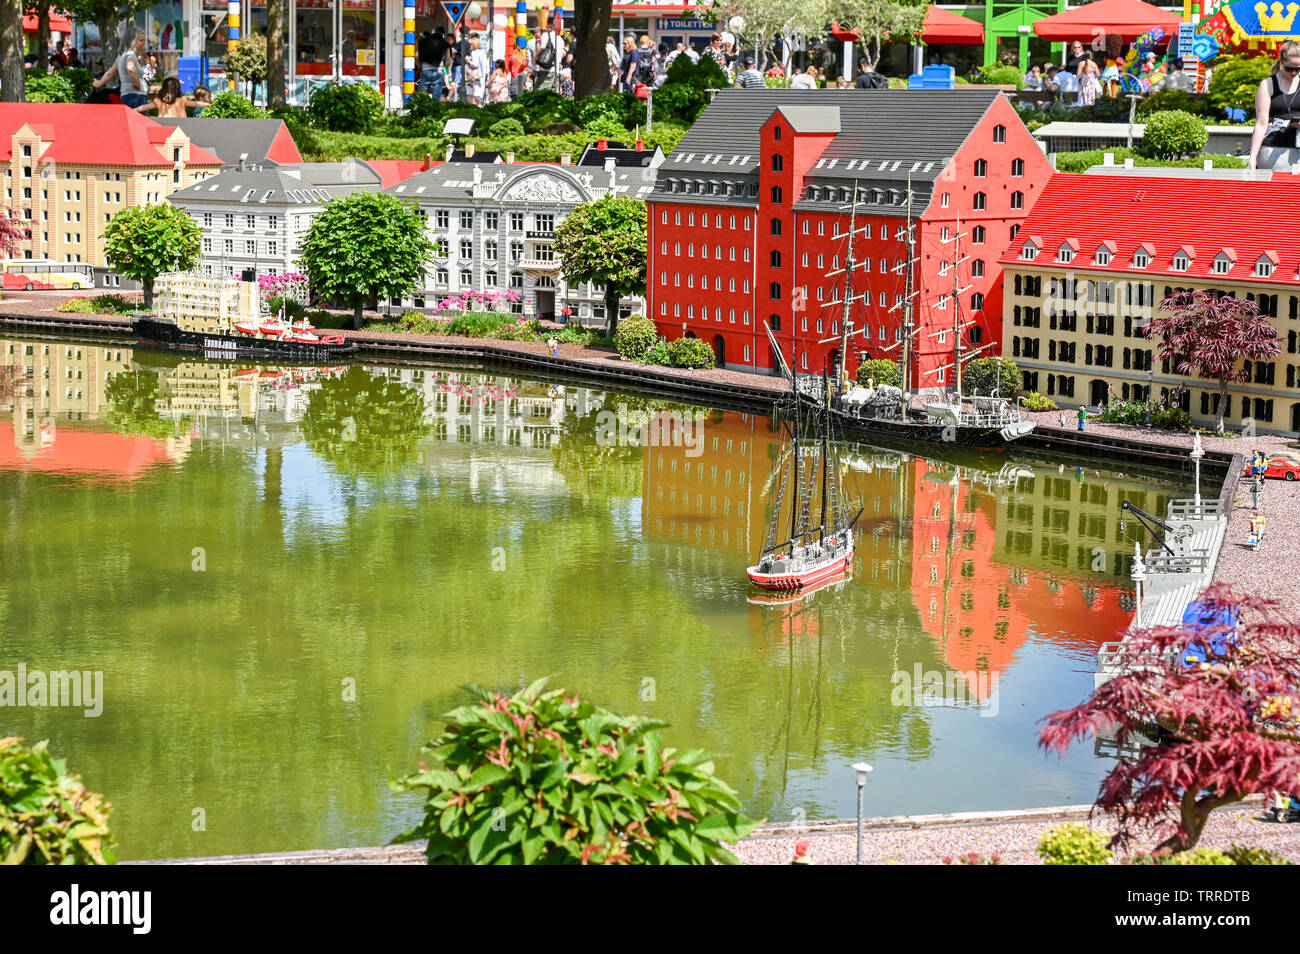 En Legoland Billund Dinamarca Este Parque Temático Familiar Abrió Sus